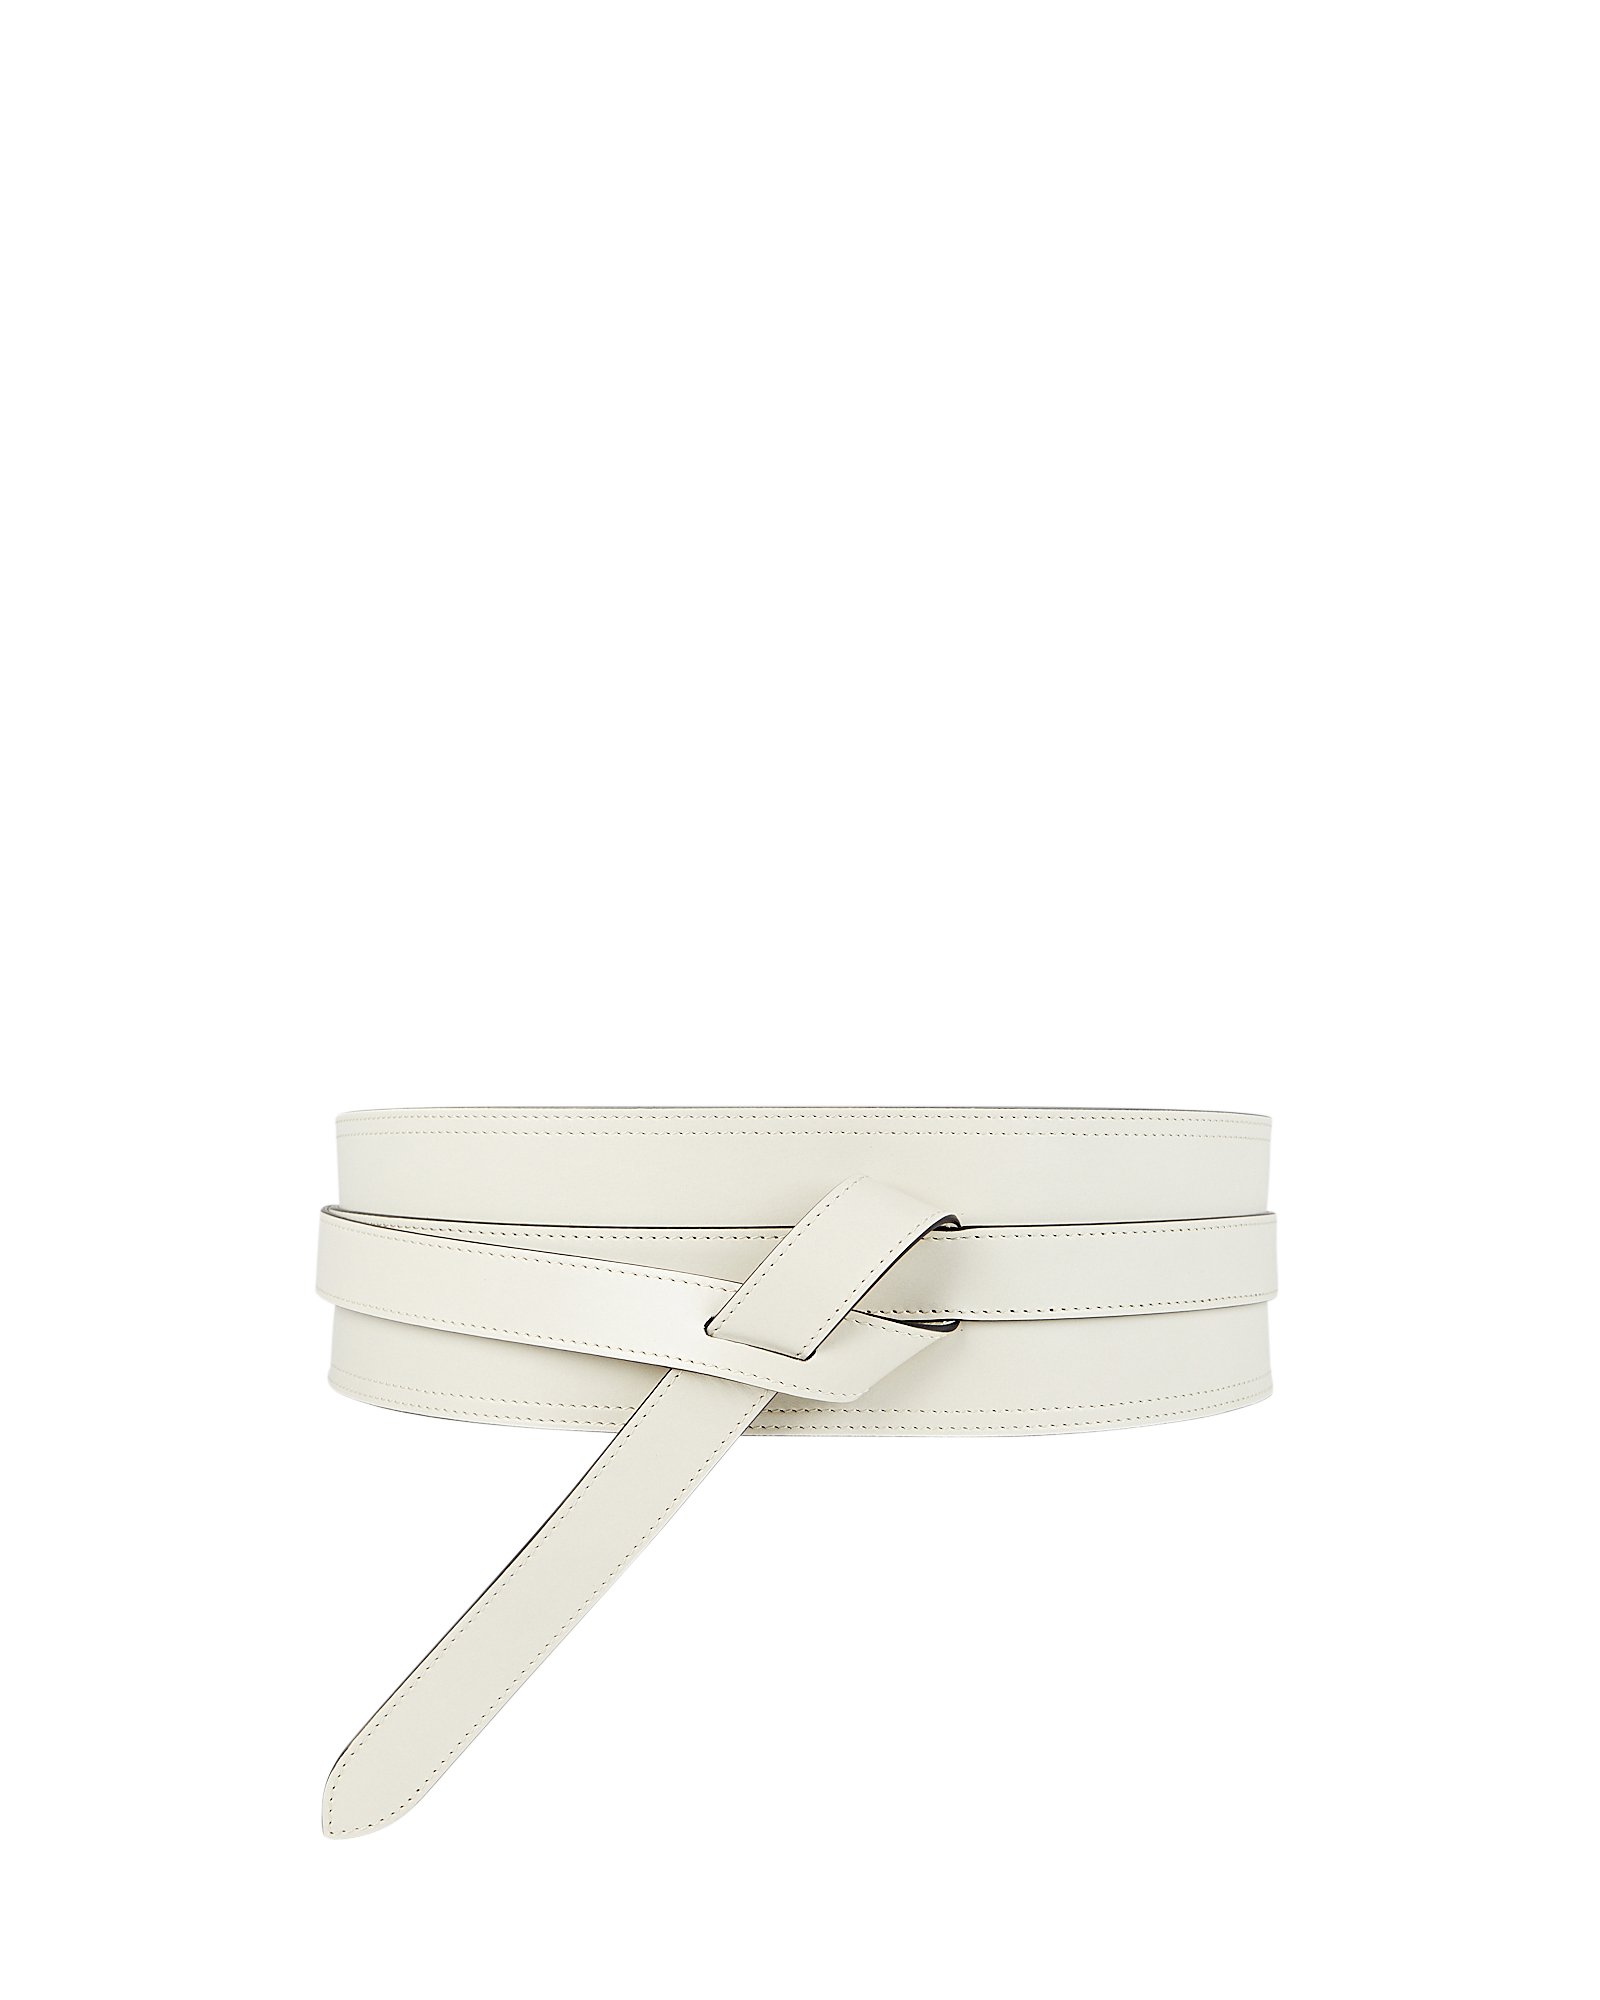 Isabel Marant Moshy Leather Belt In White | INTERMIX®